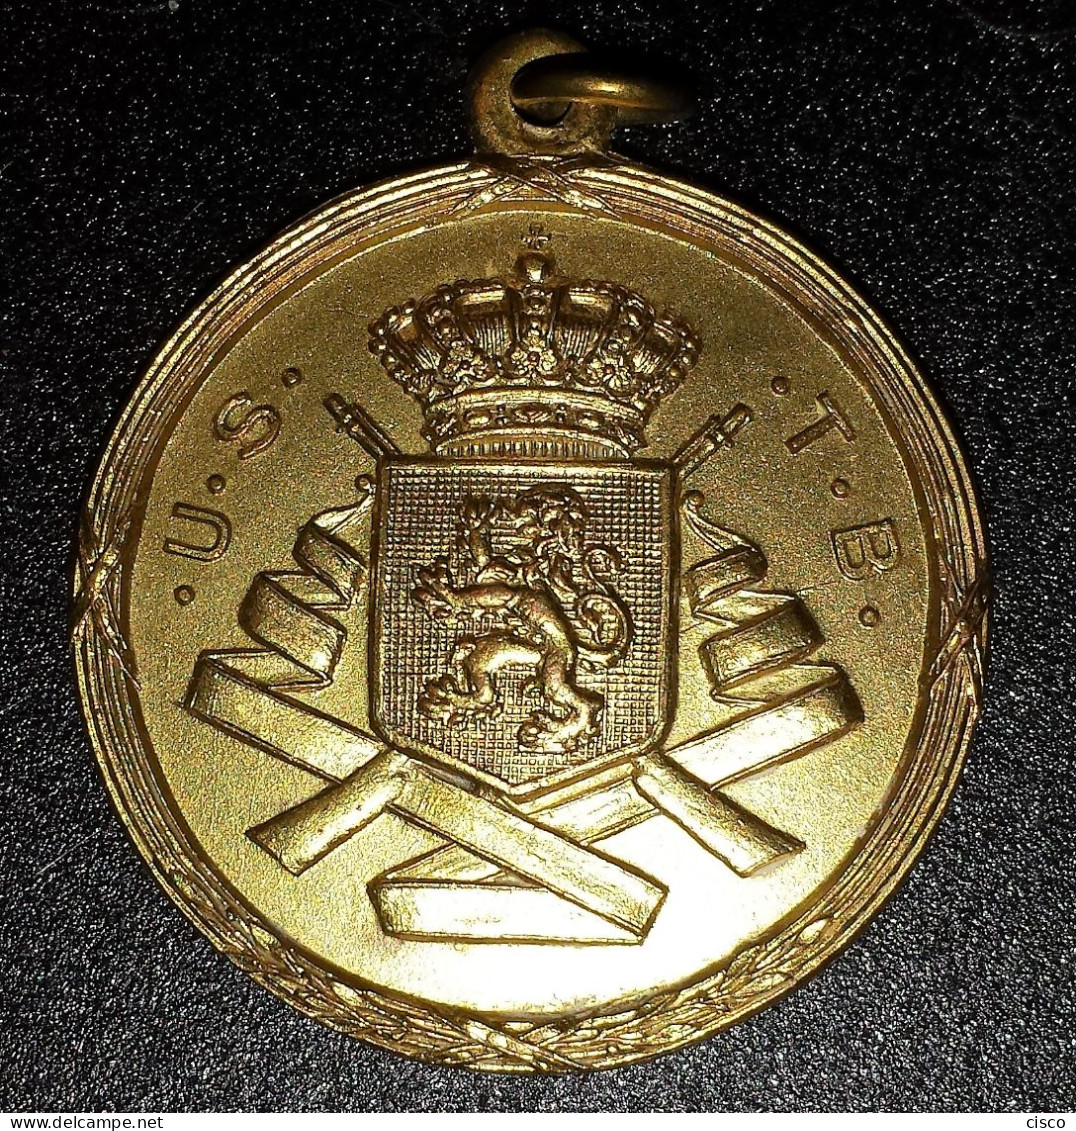 BELGIQUE Médaille Prix De Concours De Tir U.S.T.B 1948 - Fichas De Municipios